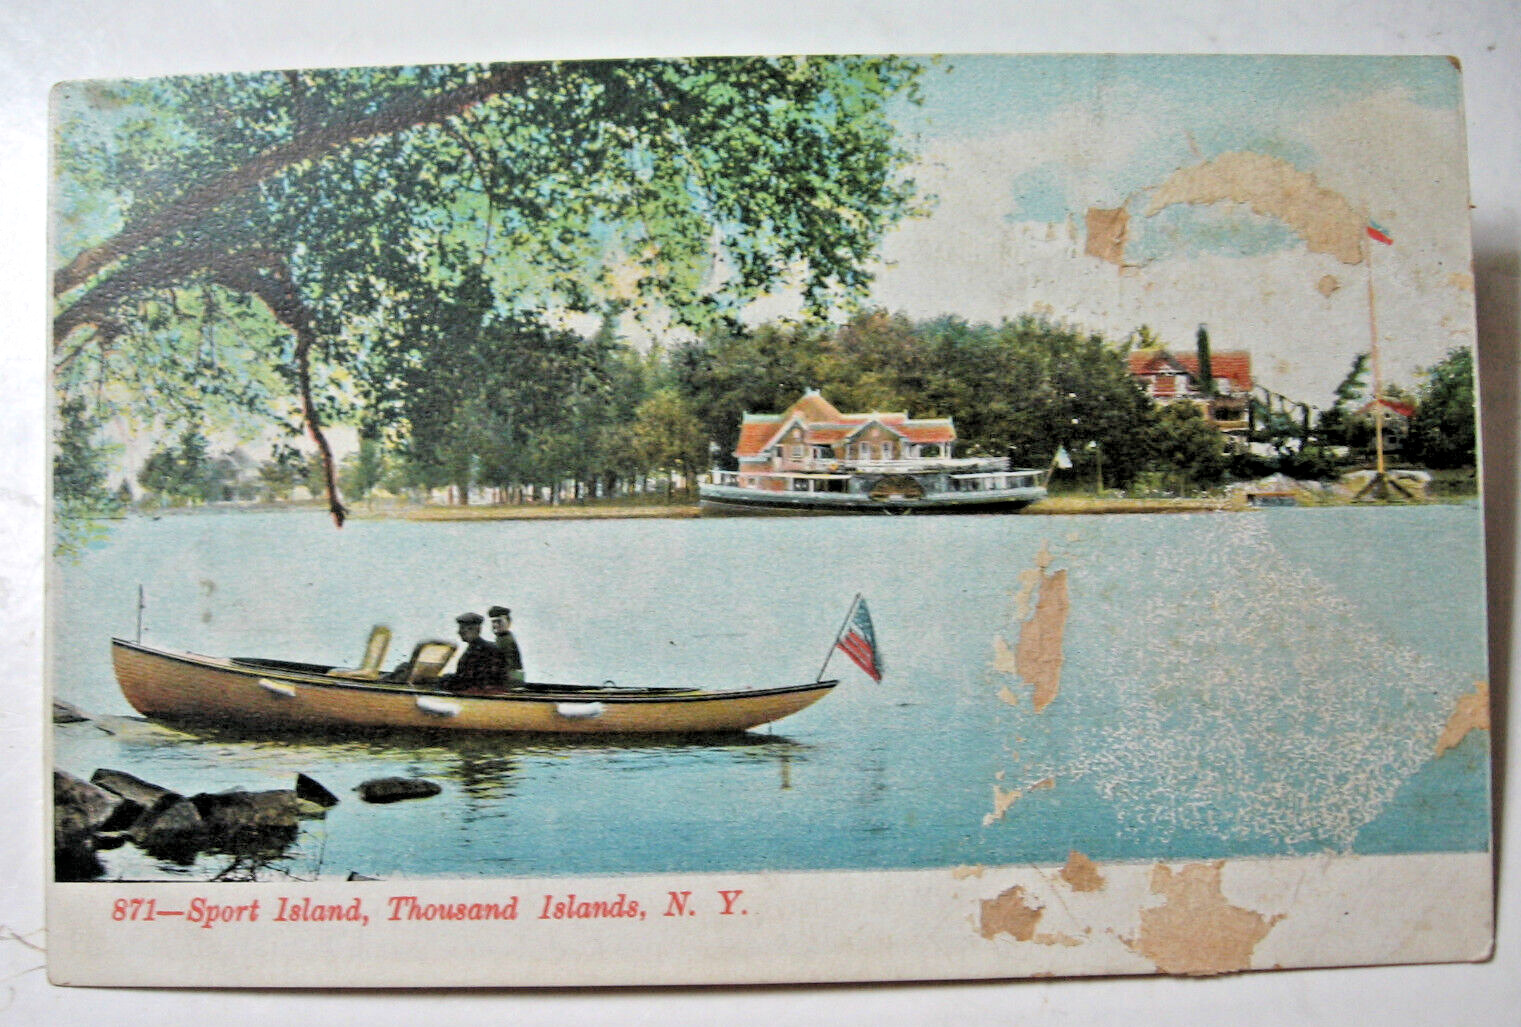 1906 era Sport Island in Thousand Islands, N.Y. postcard